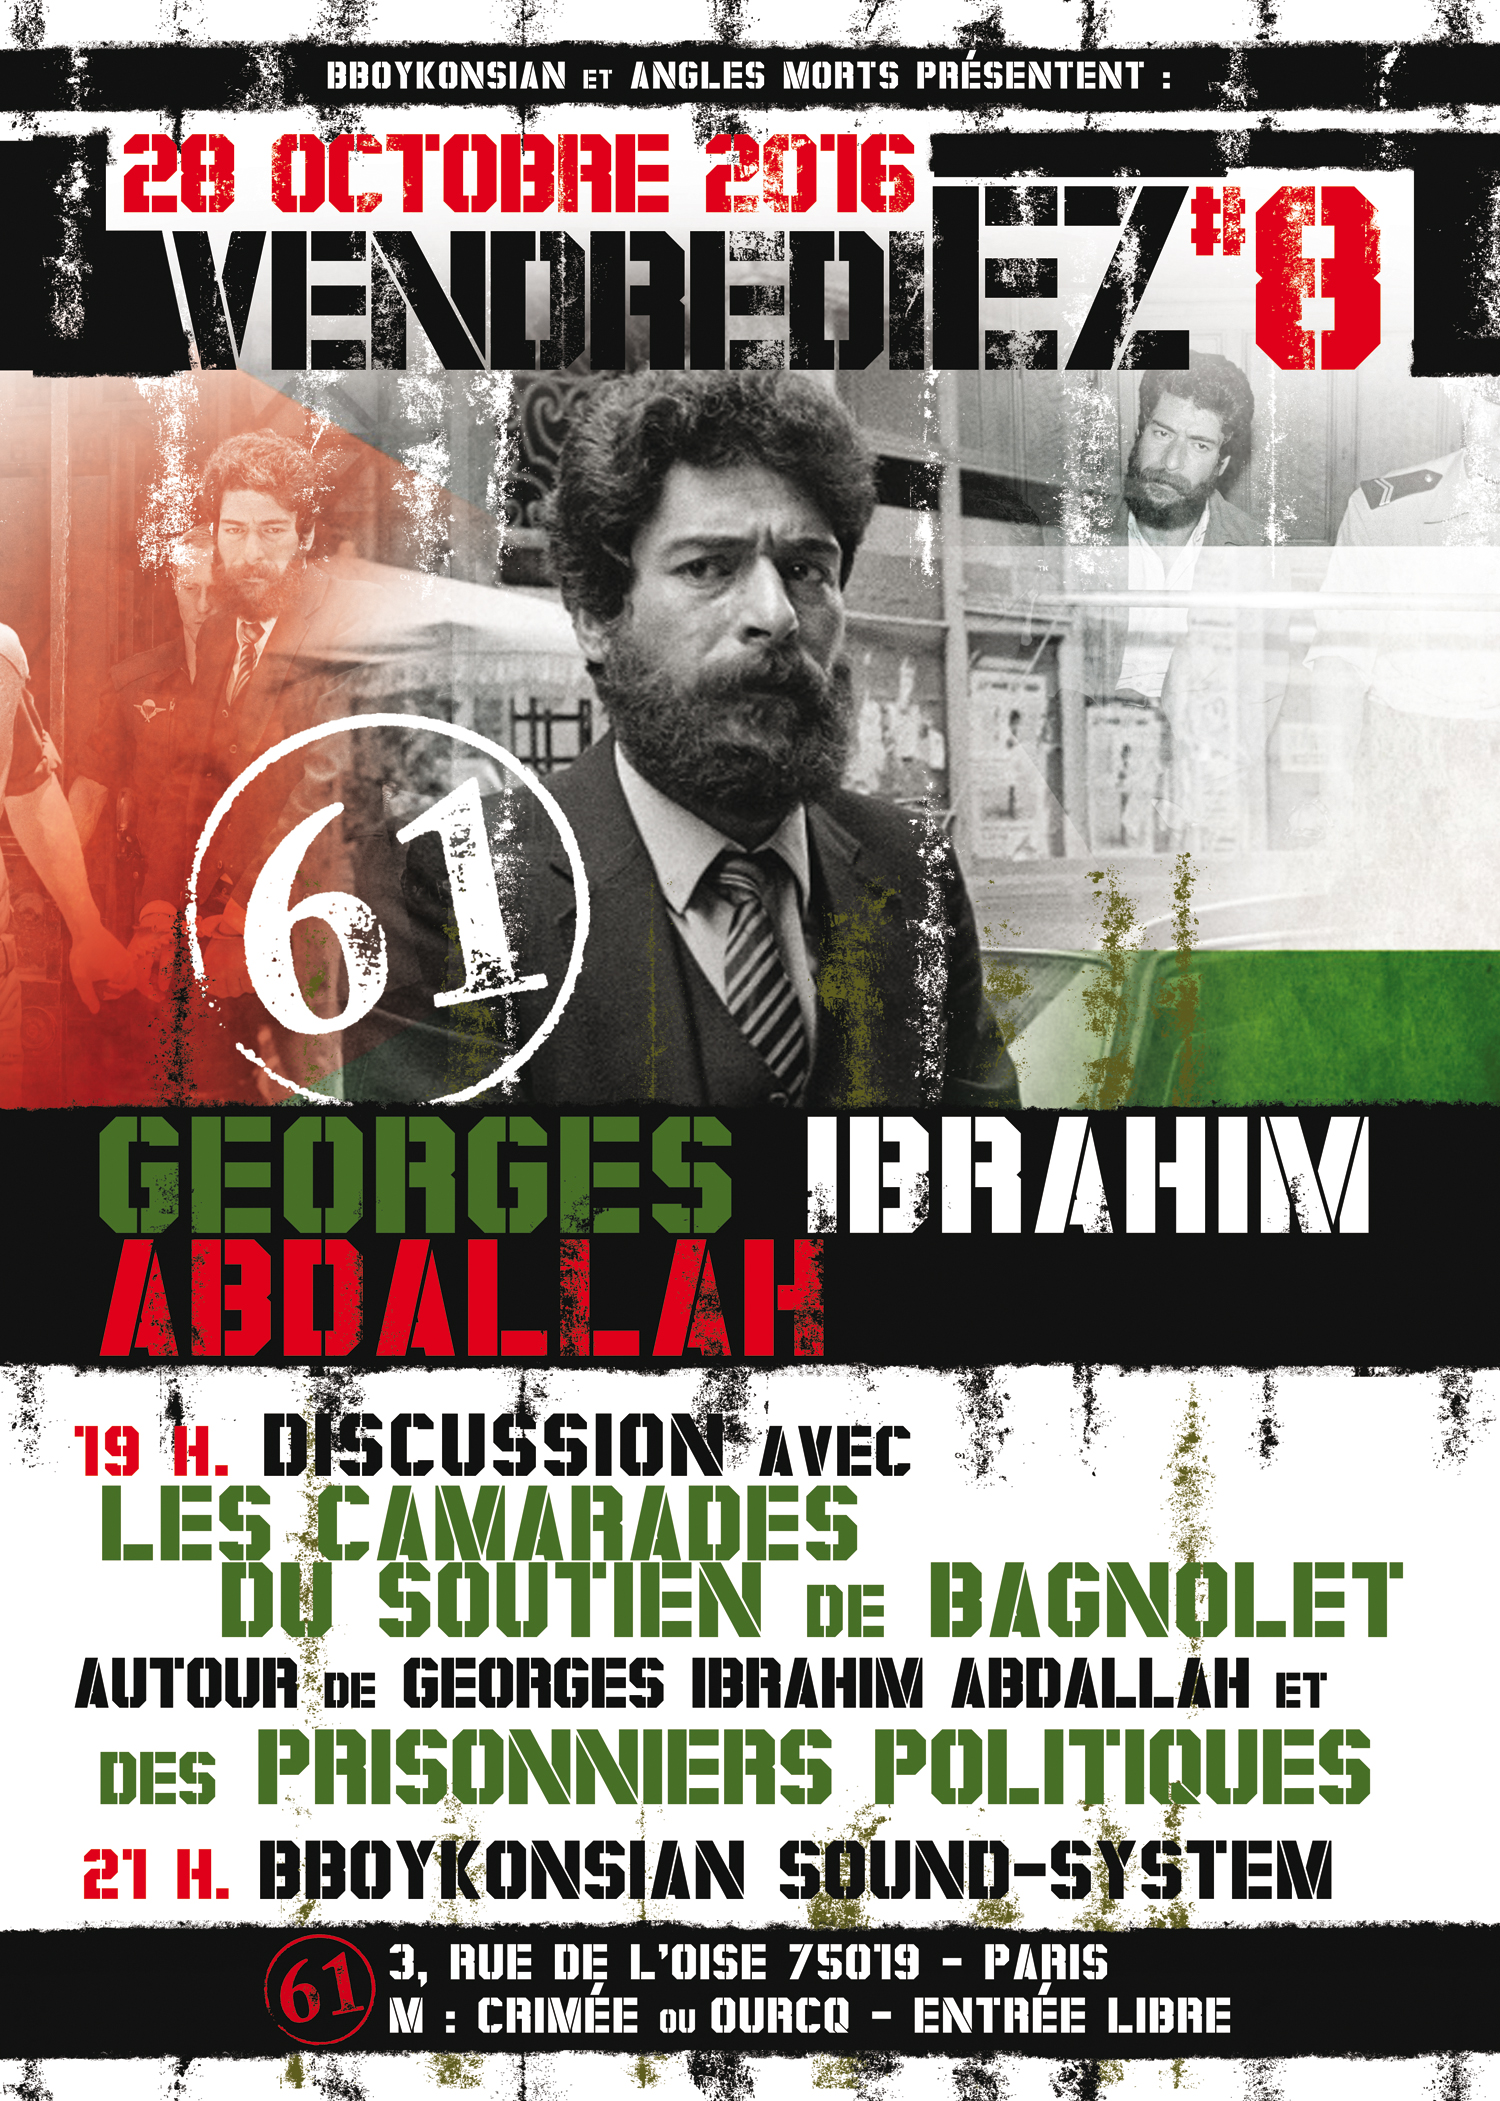 VendrediEZ #8 : Discussion autour de Georges Ibrahim Abdallah le 28 octobre 2016 à Paris